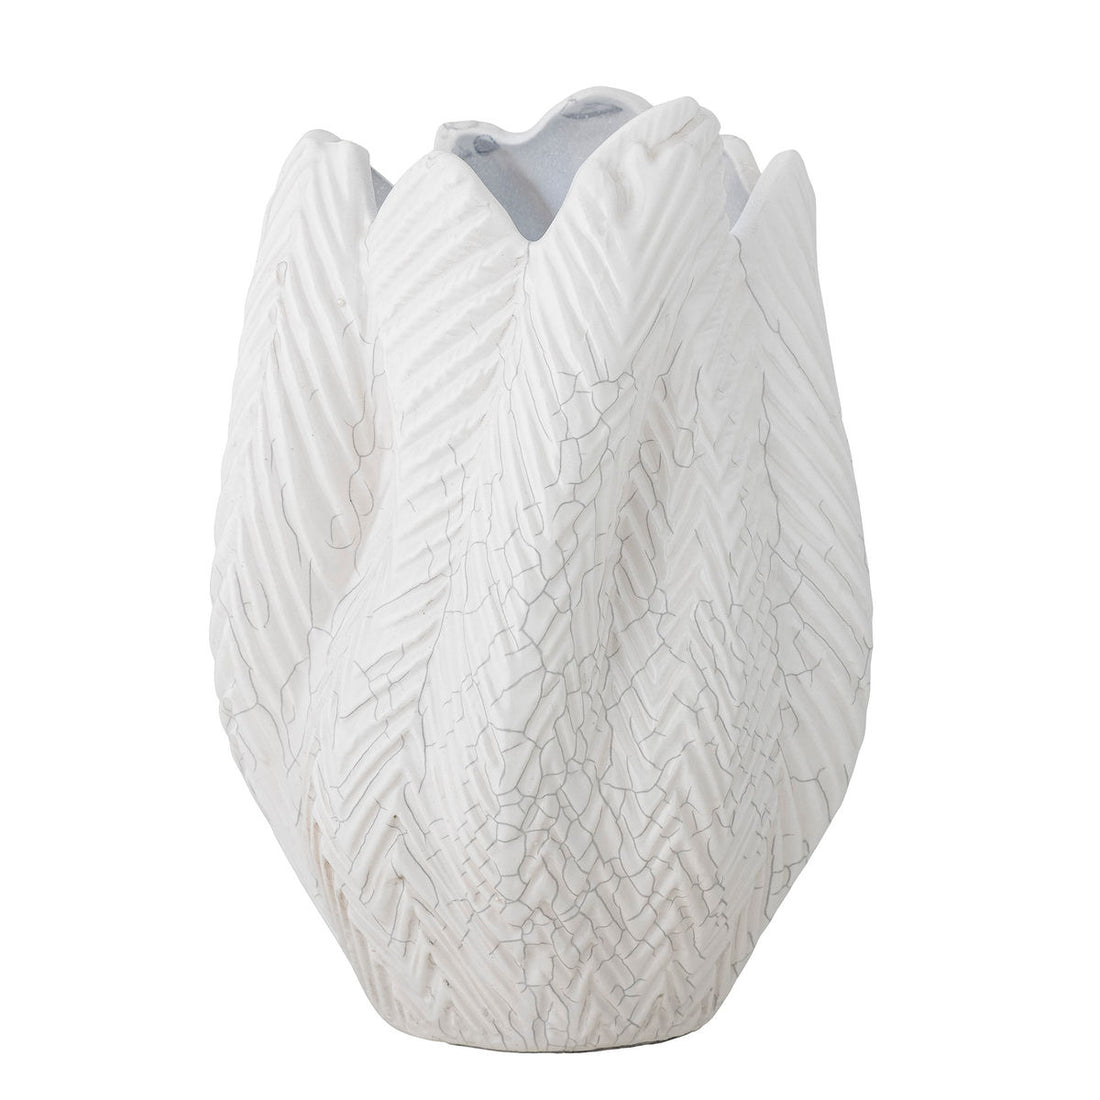 Kreative Kollektion Besa Vase, Weiß, Steinzeug